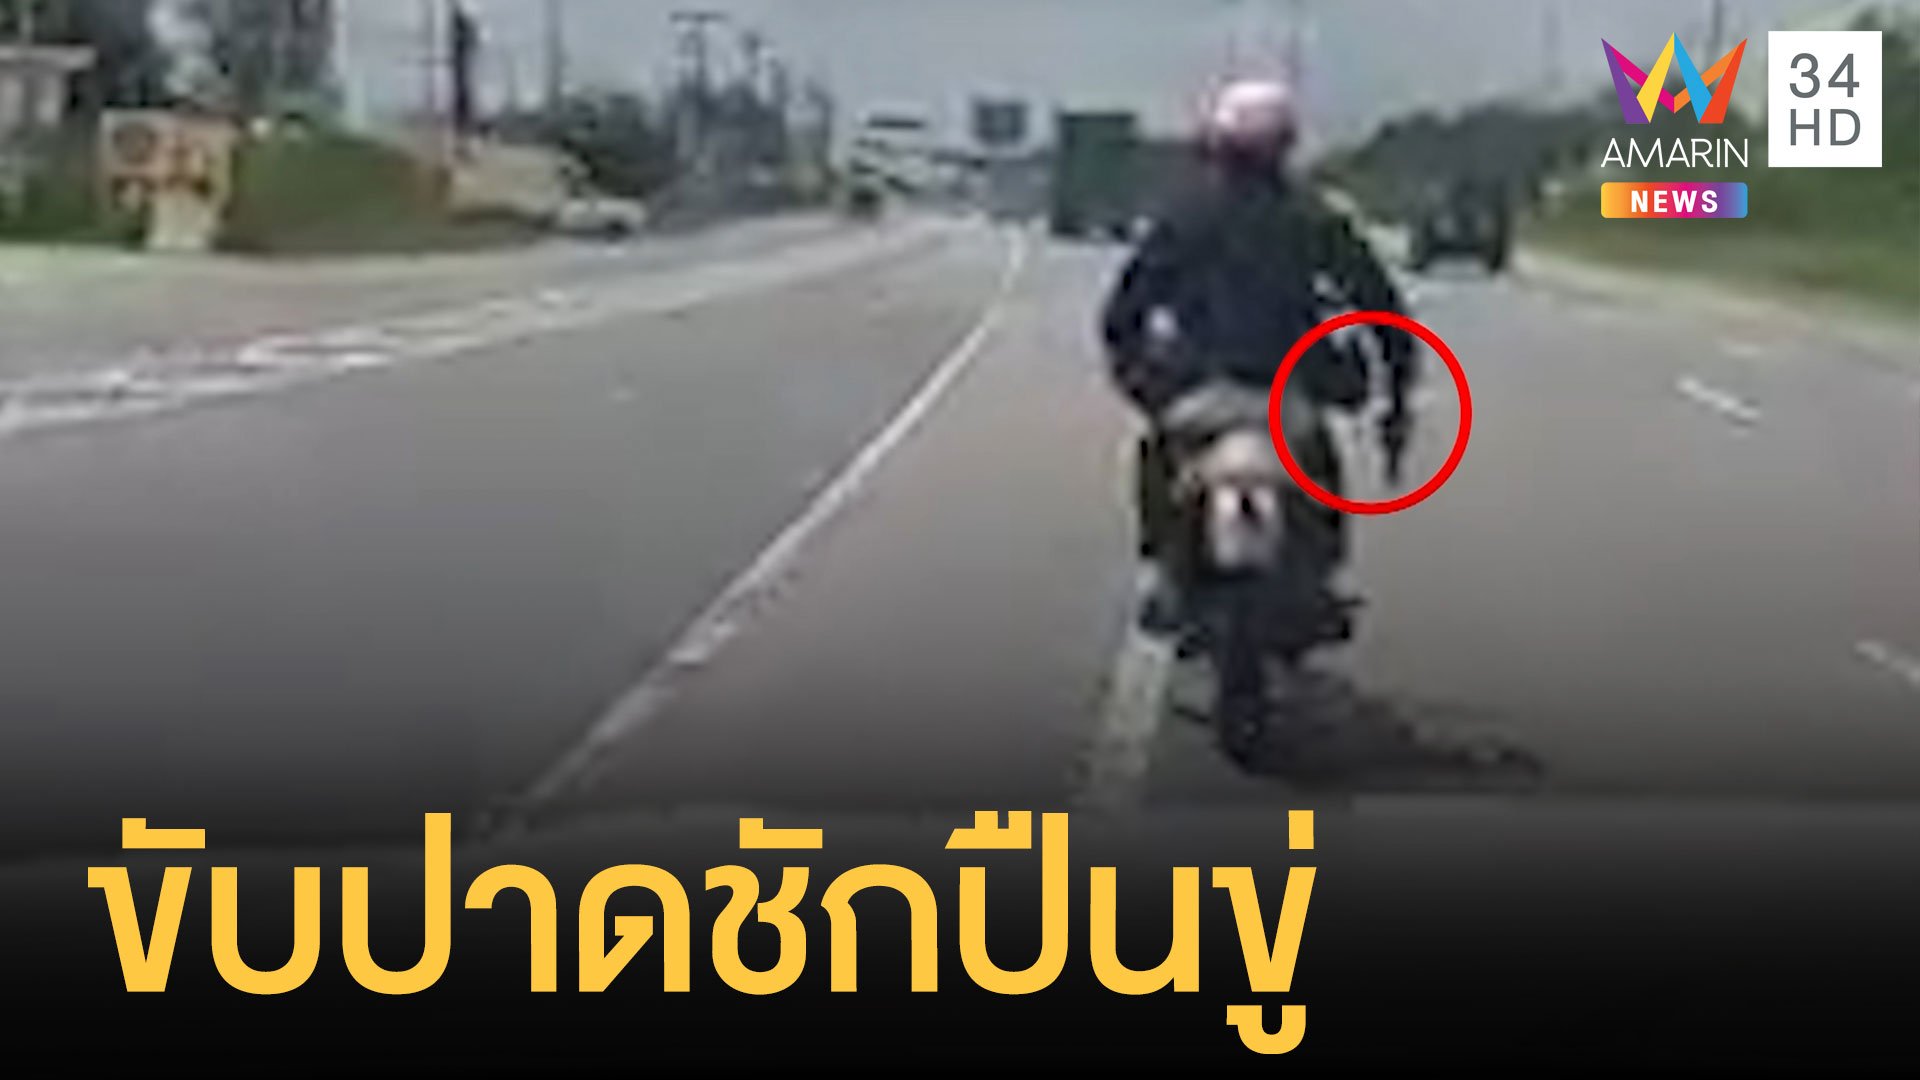 ชายกร่างแต่งตัวคล้าย จนท. ชักปืนขู่กลางถนน | ข่าวเที่ยงอมรินทร์ | 18 ต.ค. 64 | AMARIN TVHD34